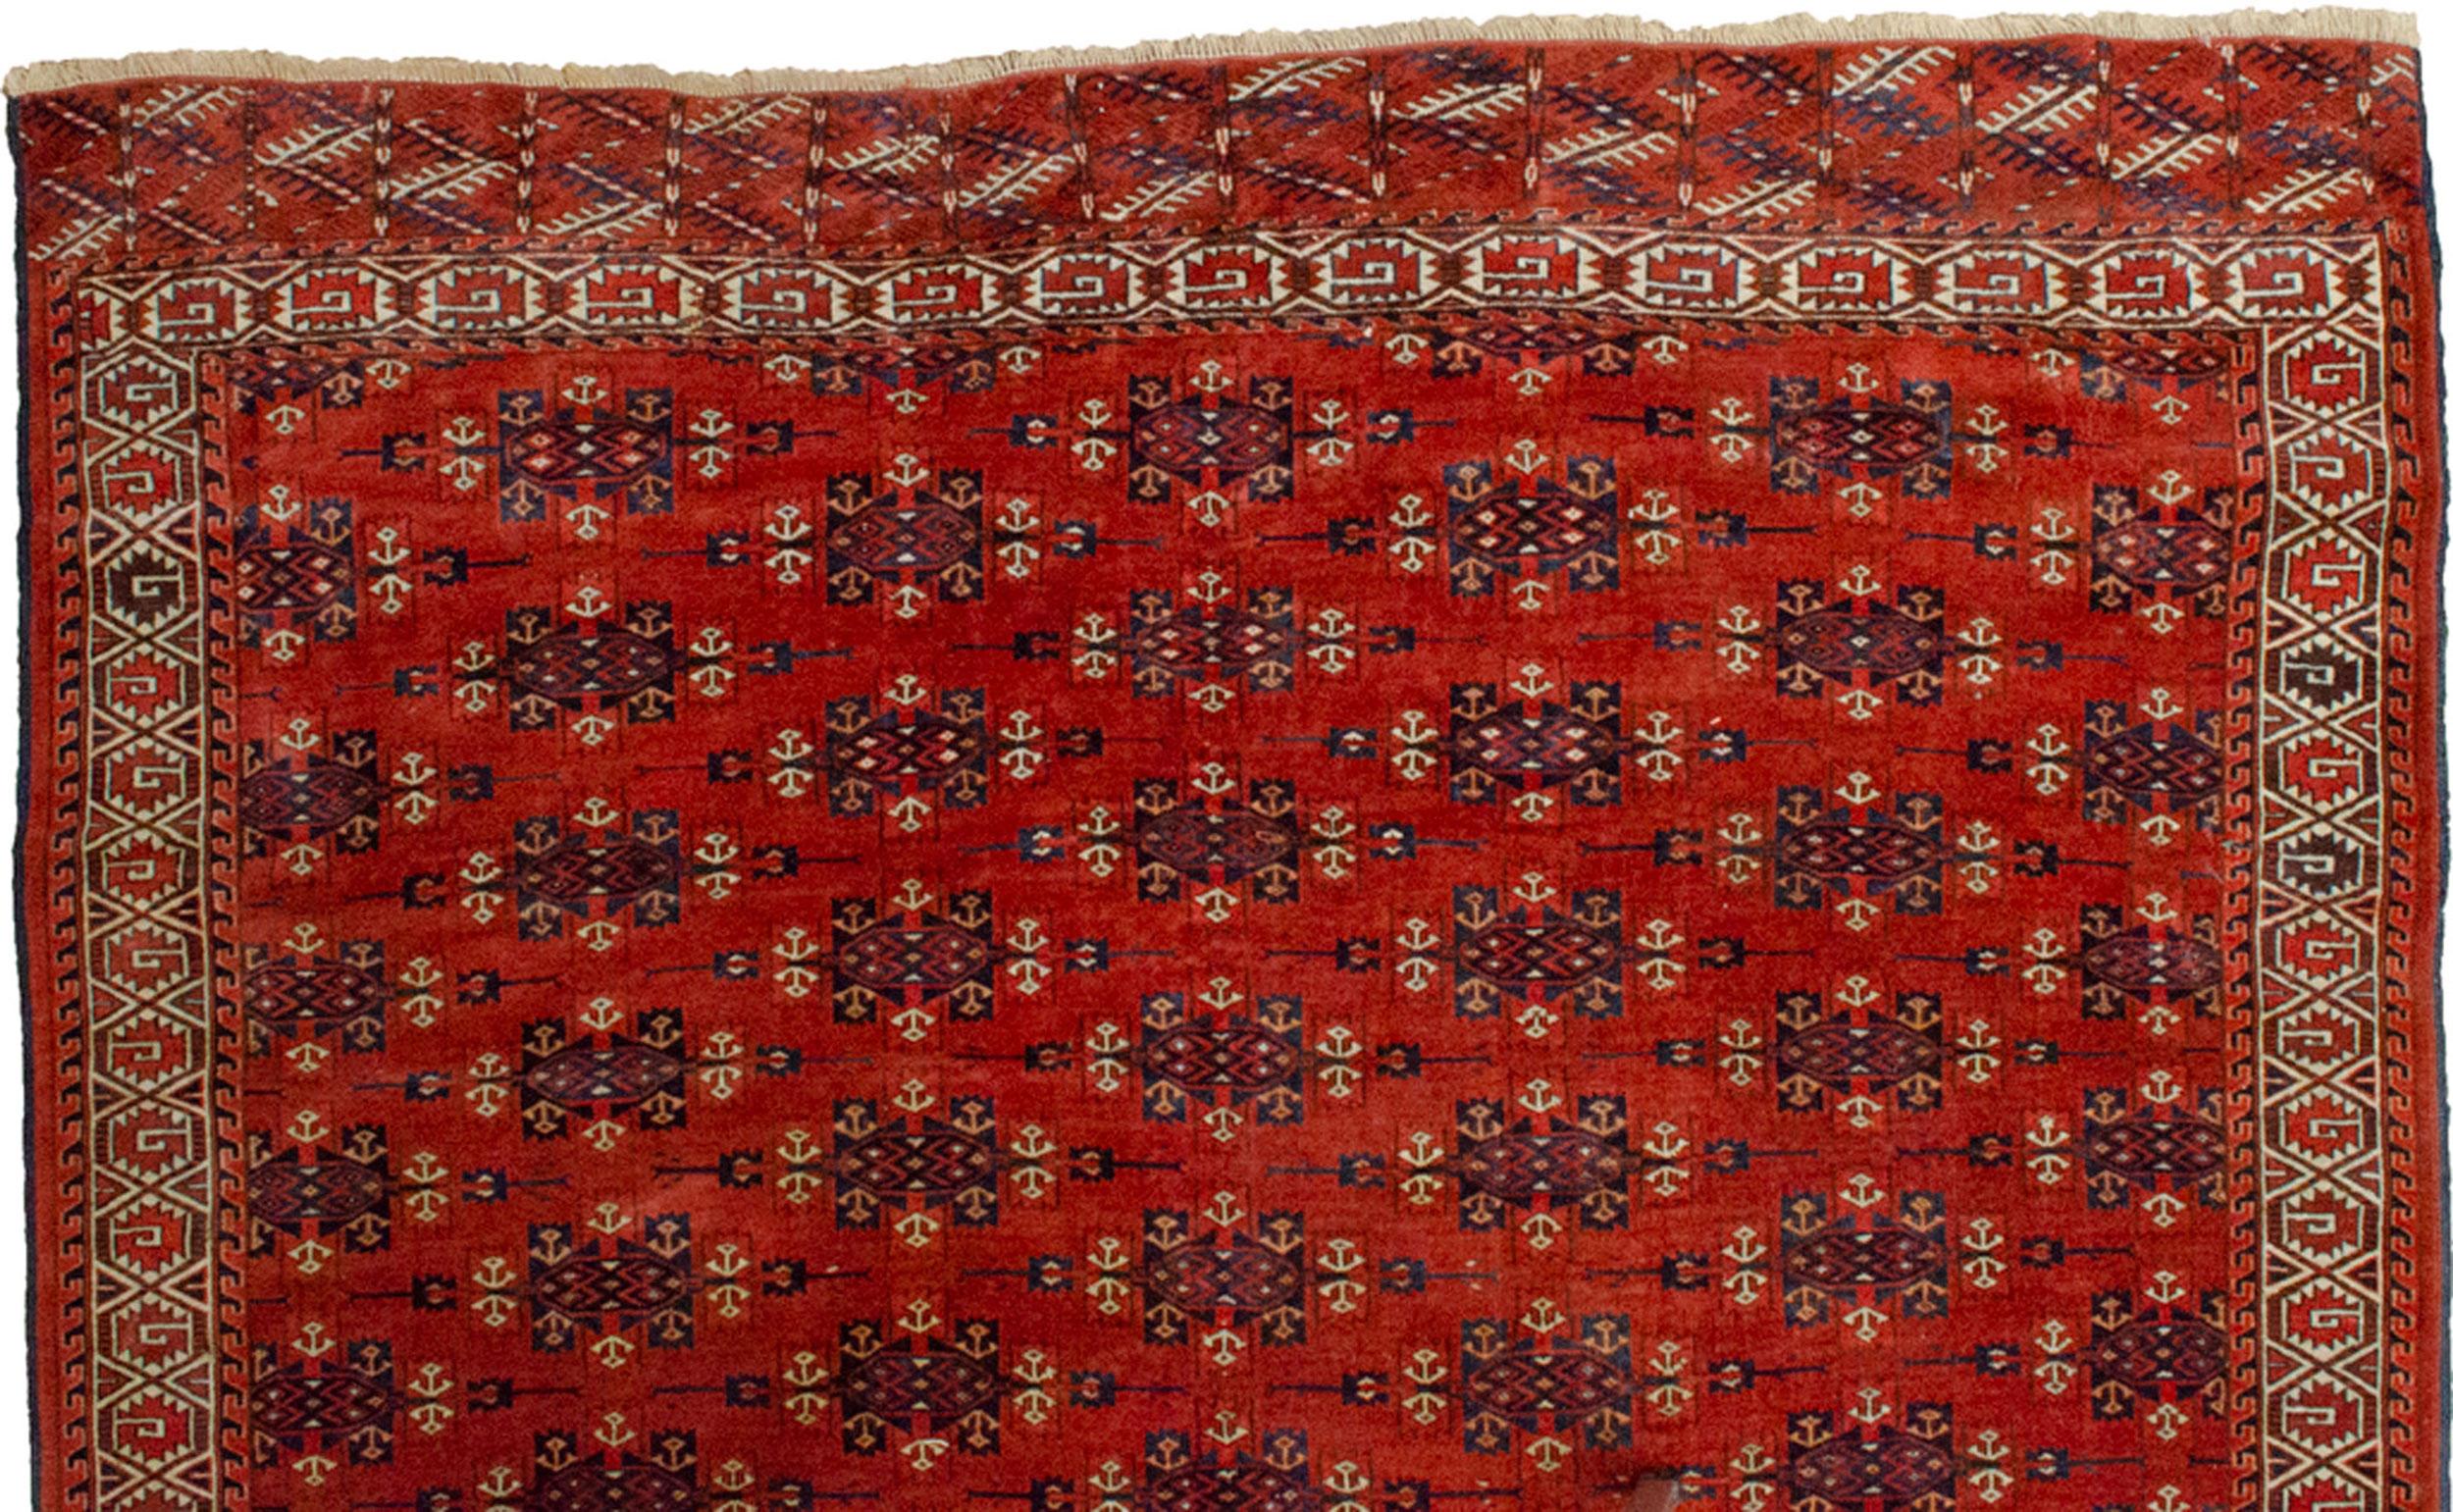 Wool Antique Turkmen Yamoud Carpet, Turkmenistan, Circa 1900 For Sale